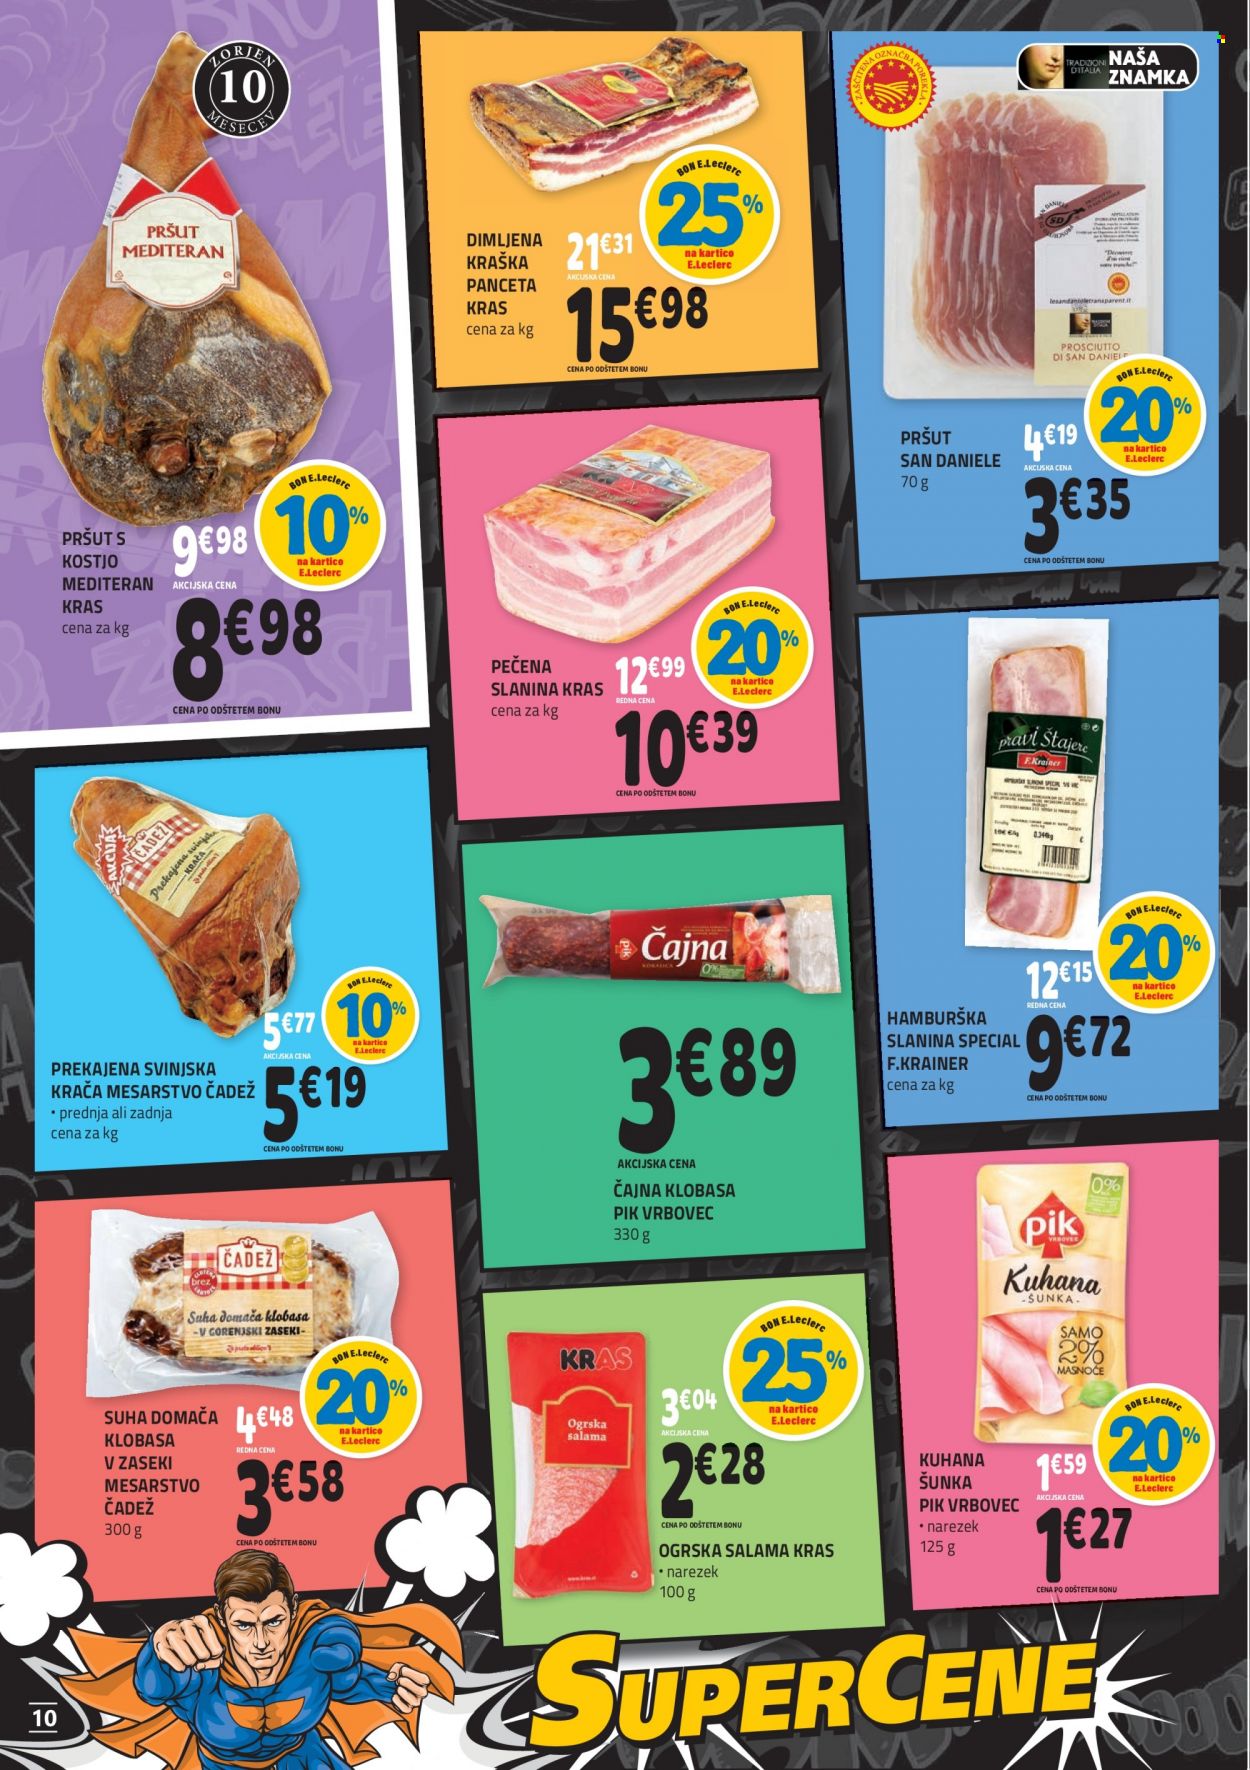 thumbnail - E.Leclerc katalog - 22.9.2021 - 2.10.2021 - Ponudba izdelkov - hamburška slanina, klobasa, ogrska salama, pršut, pršut s kostjo, salama, slanina, šunka. Stran 10.